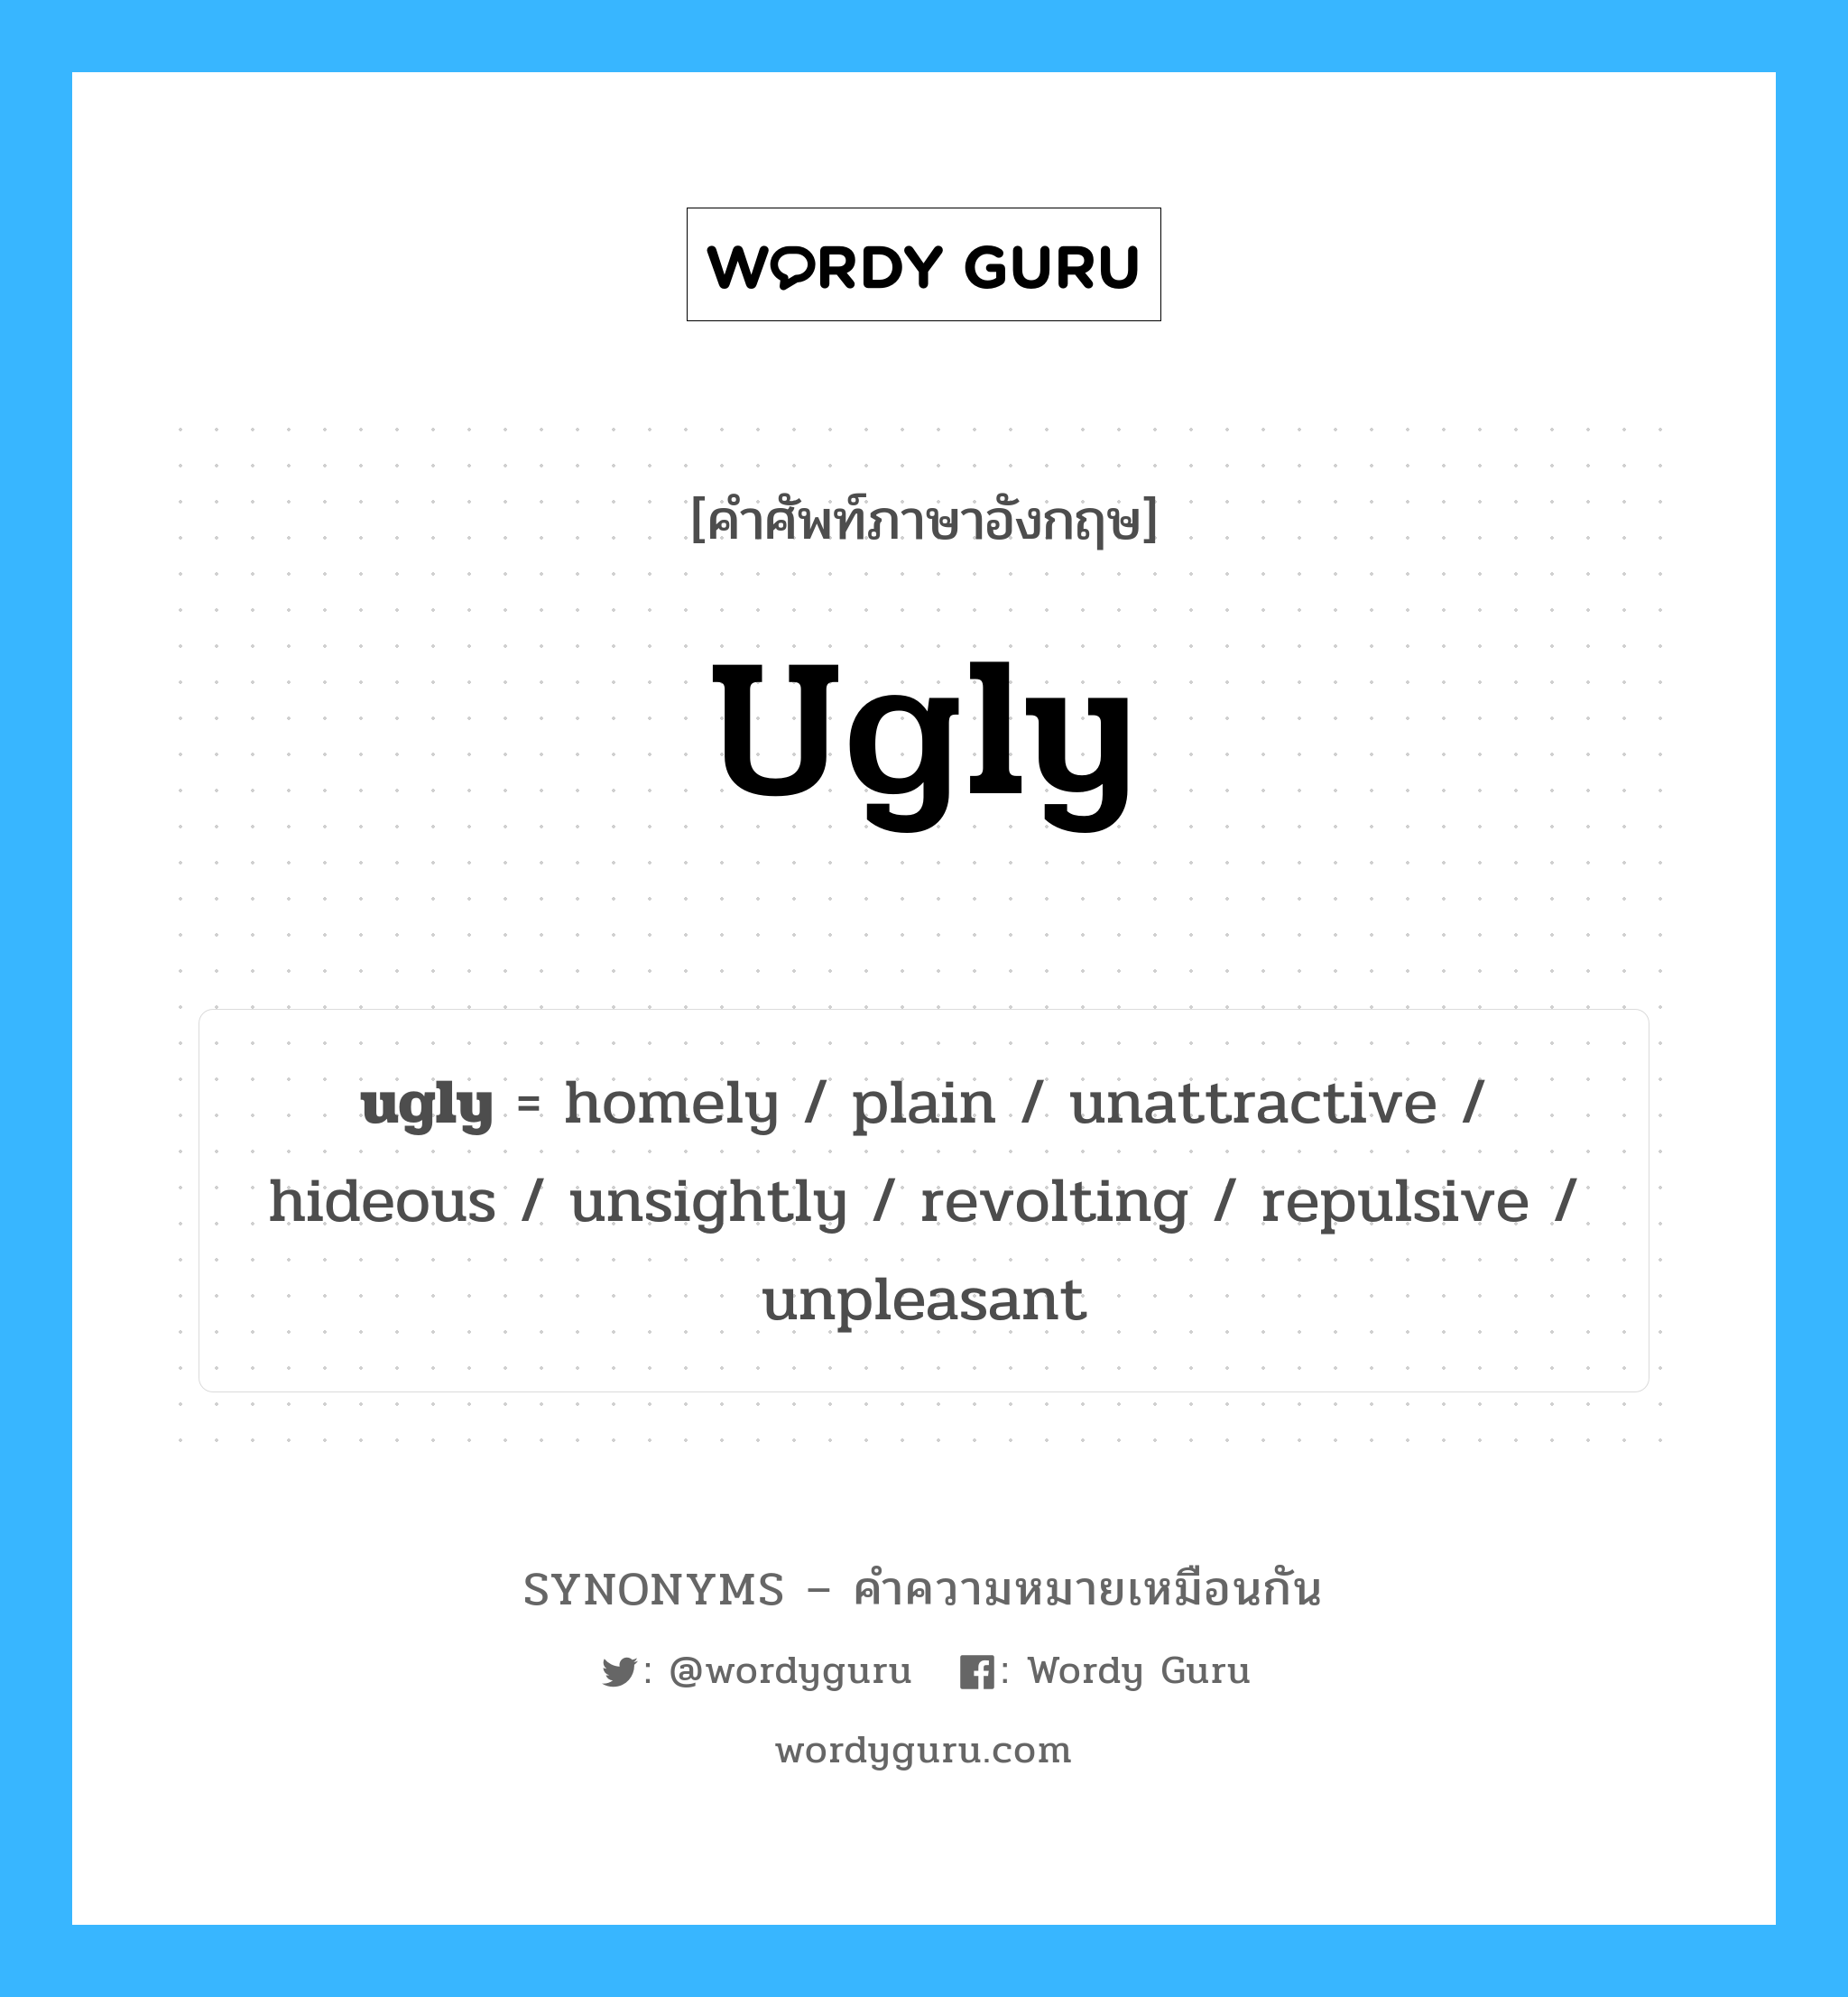 repulsive เป็นหนึ่งใน ugly และมีคำอื่น ๆ อีกดังนี้, คำศัพท์ภาษาอังกฤษ repulsive ความหมายคล้ายกันกับ ugly แปลว่า ผลัก หมวด ugly